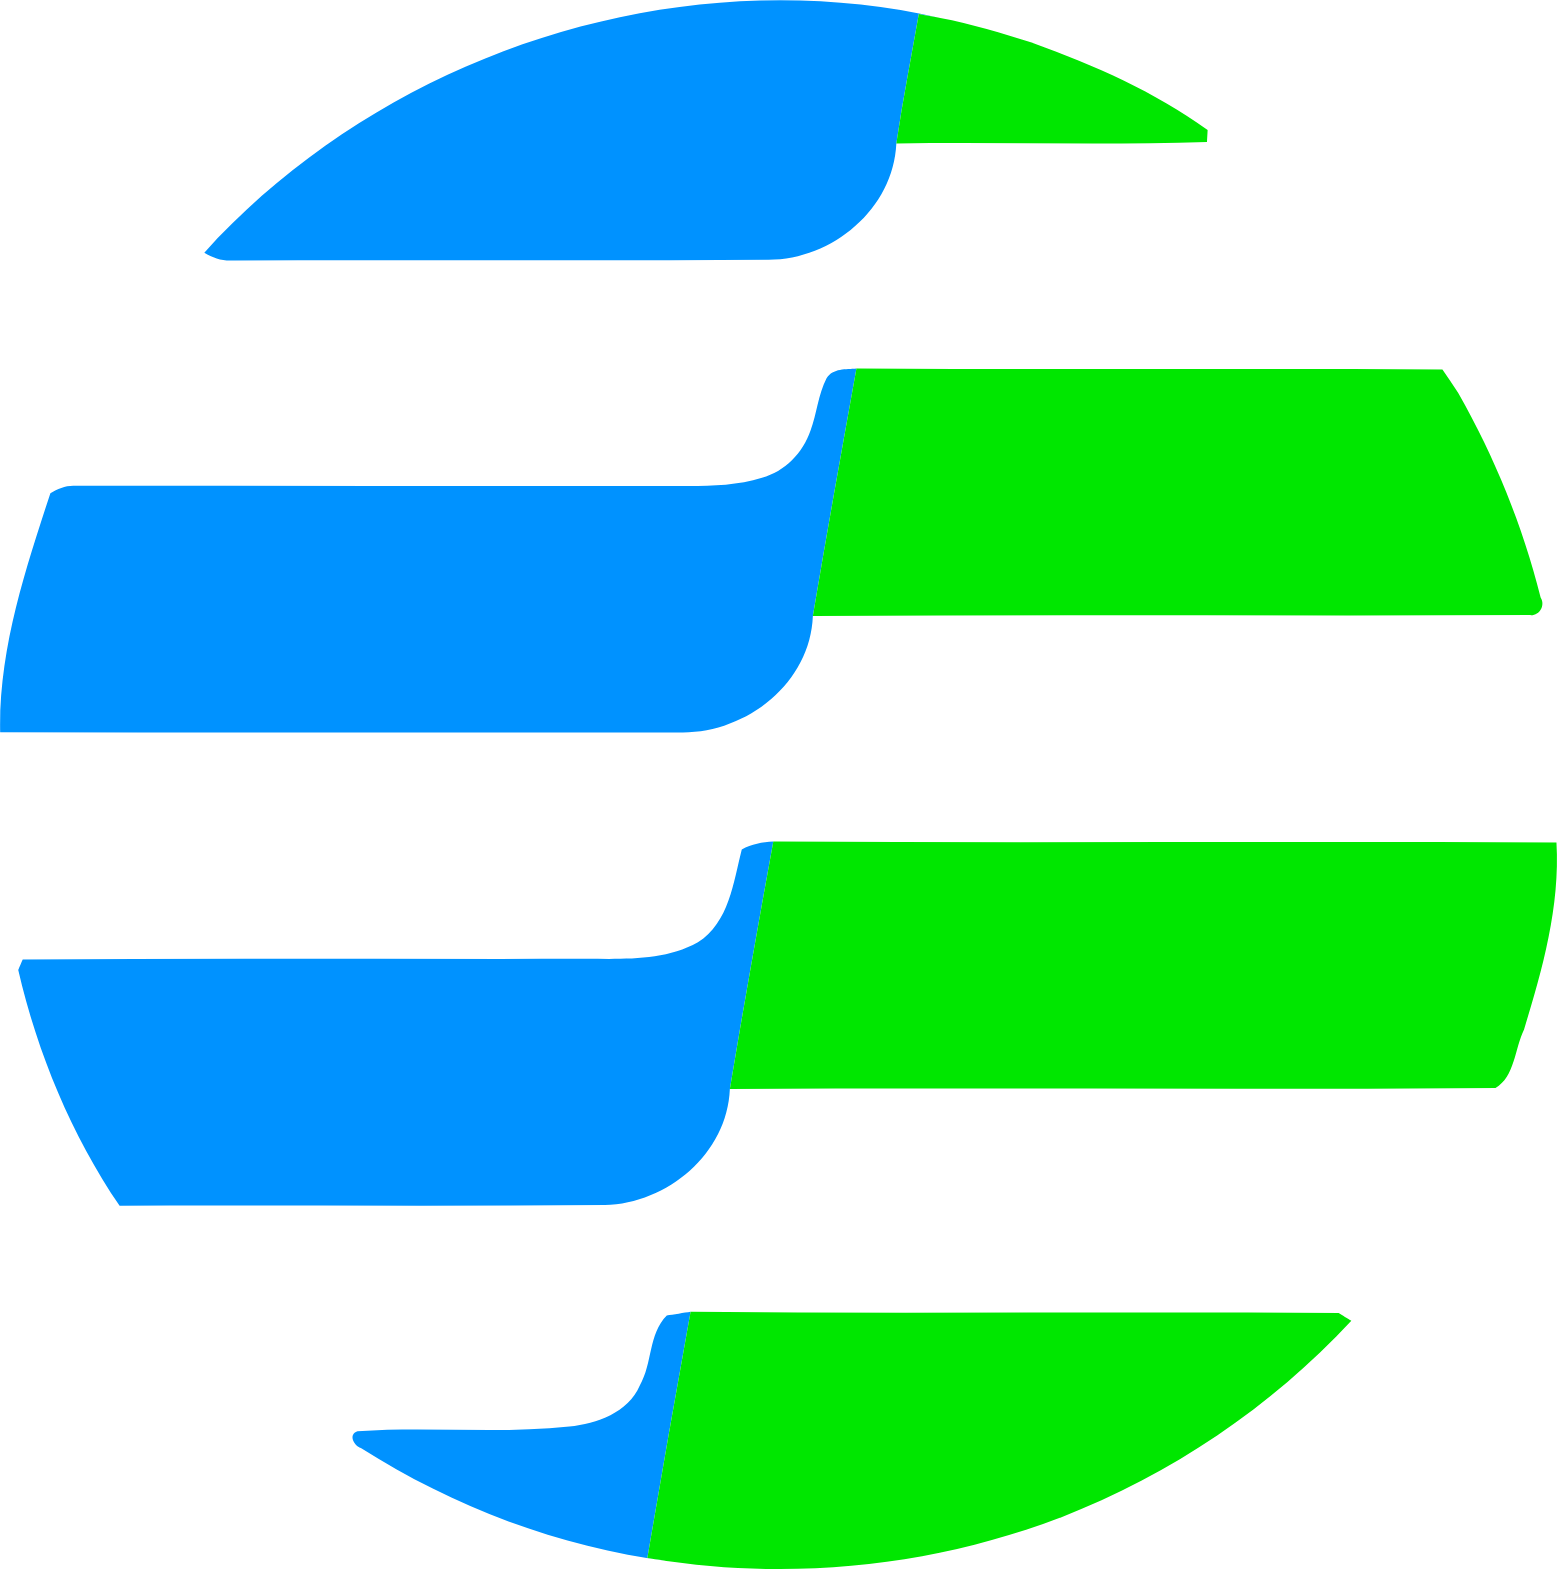 Ultrapar Participacoes logo (PNG transparent)